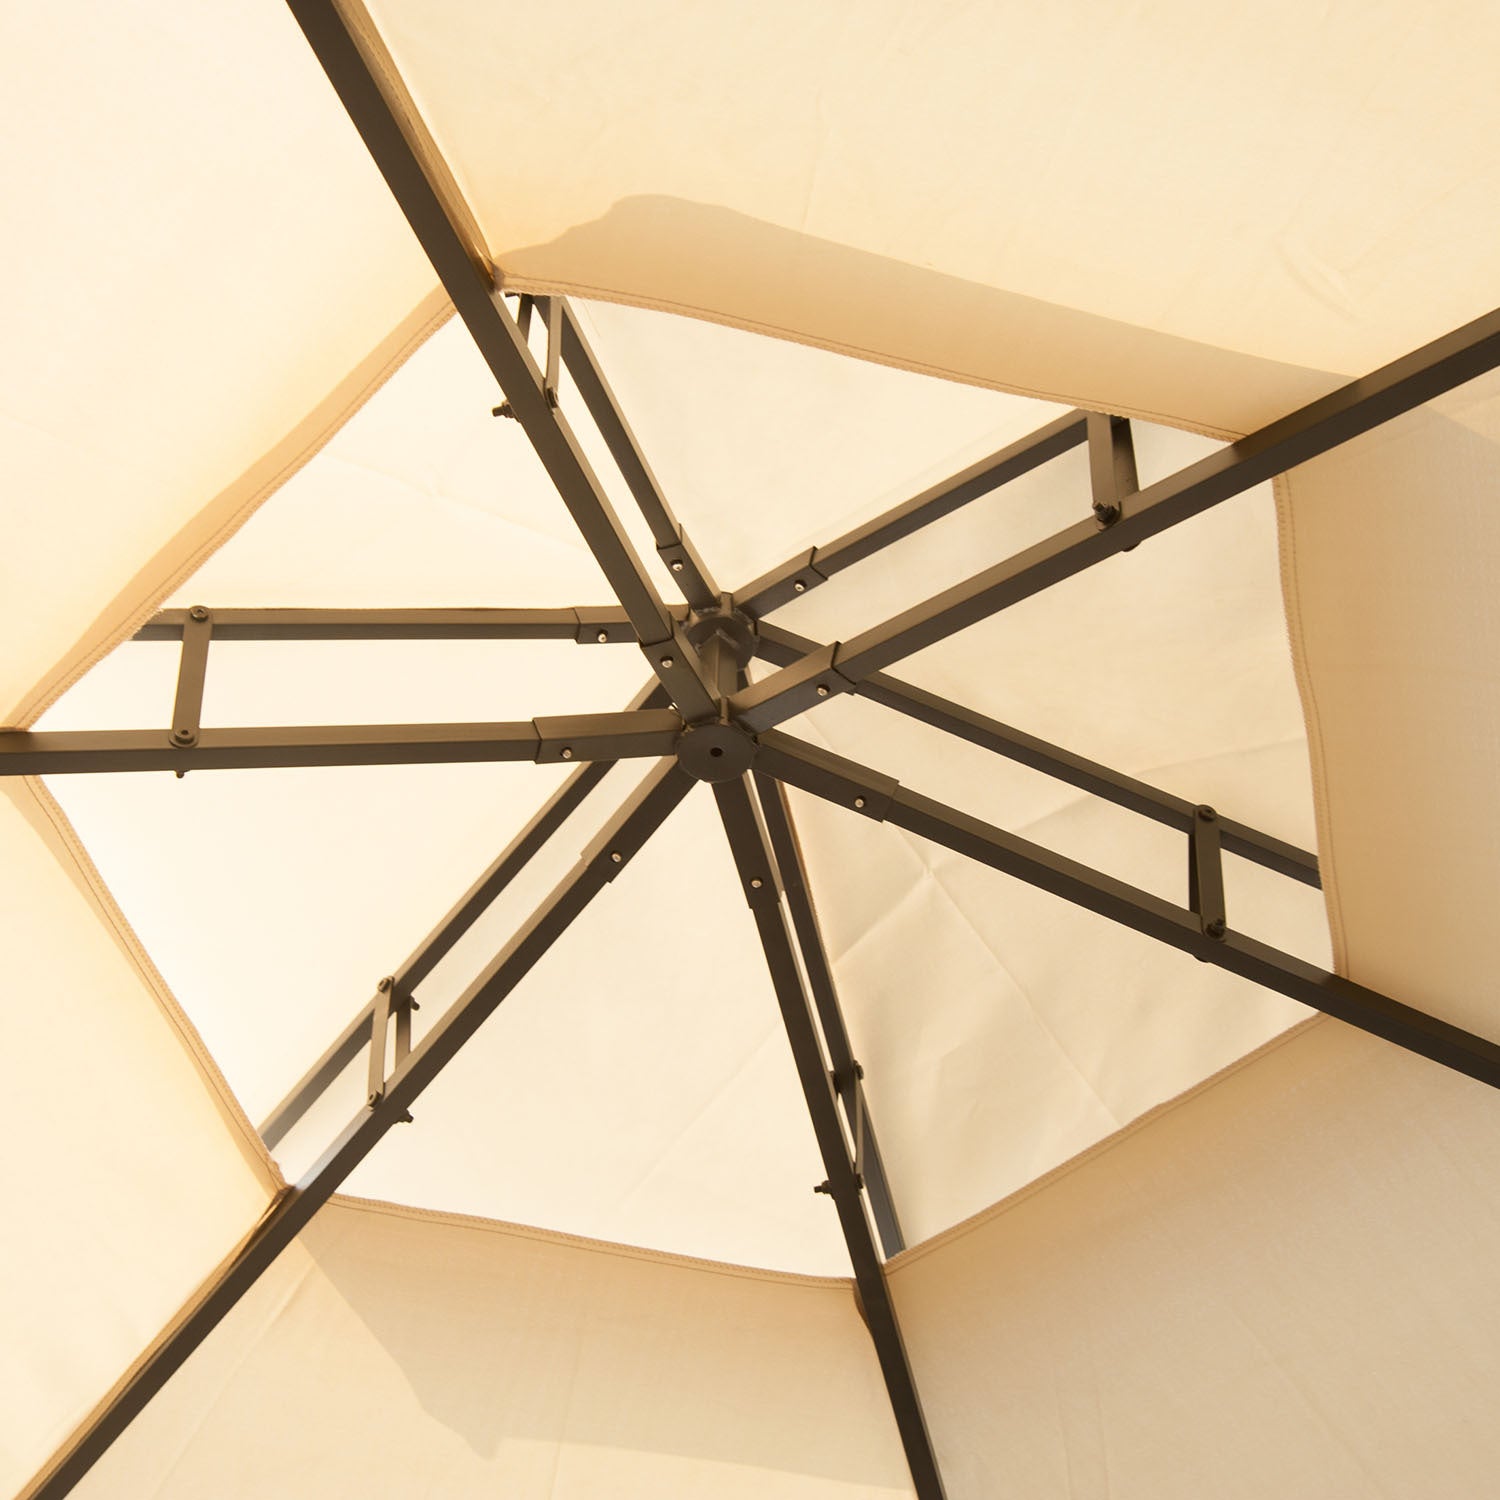 13' x 13' Patio Gazebo, Double Roof Hexagon Outdoor beige-steel